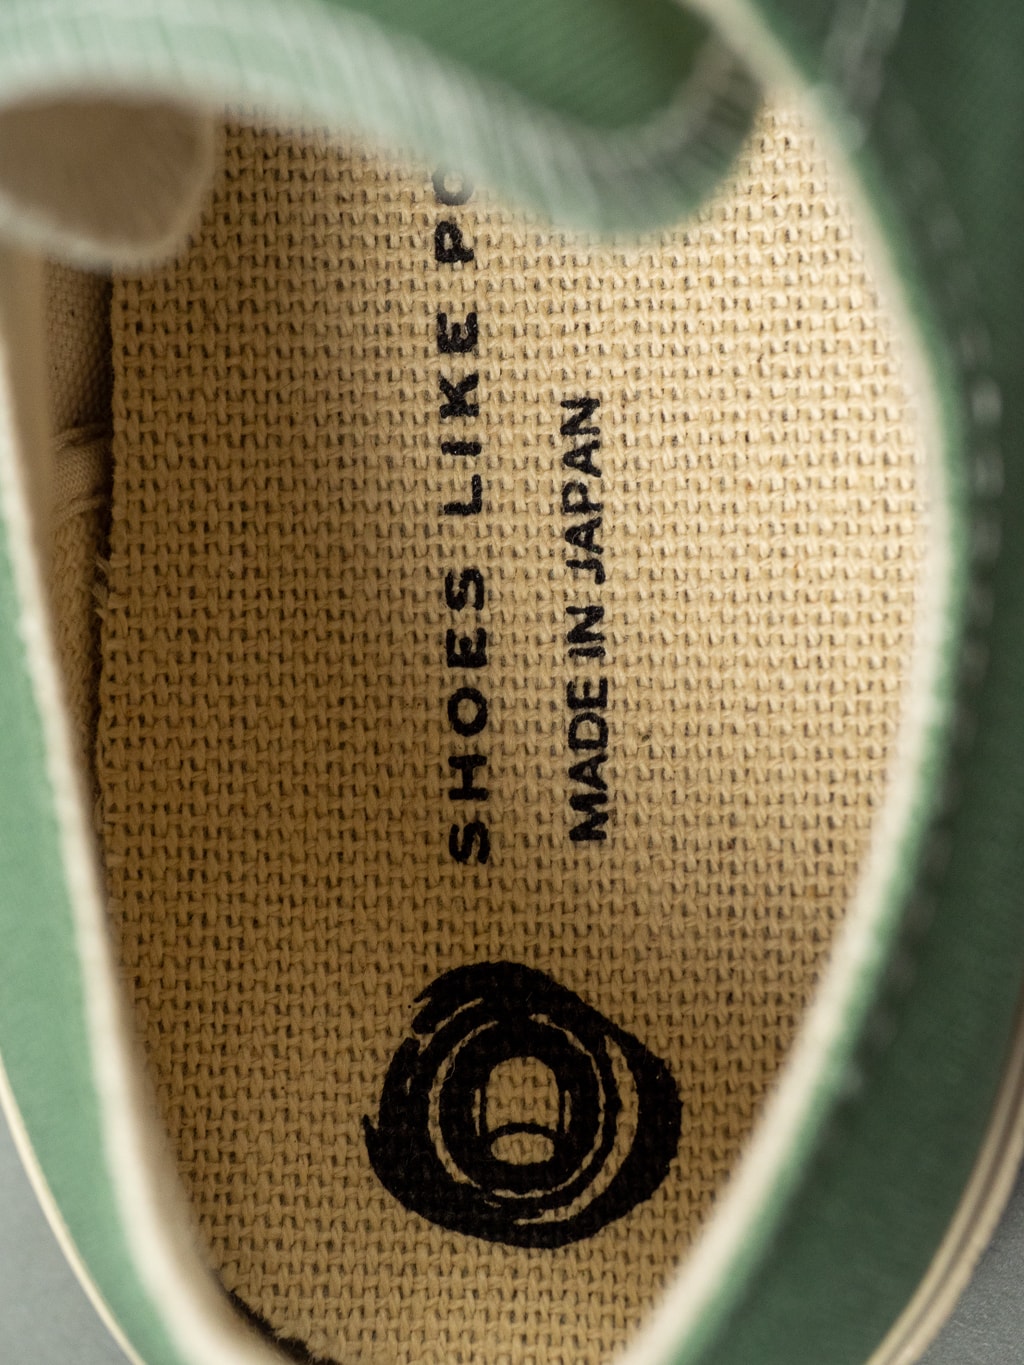 Shoes Like Pottery 01JP Low Sneaker Green